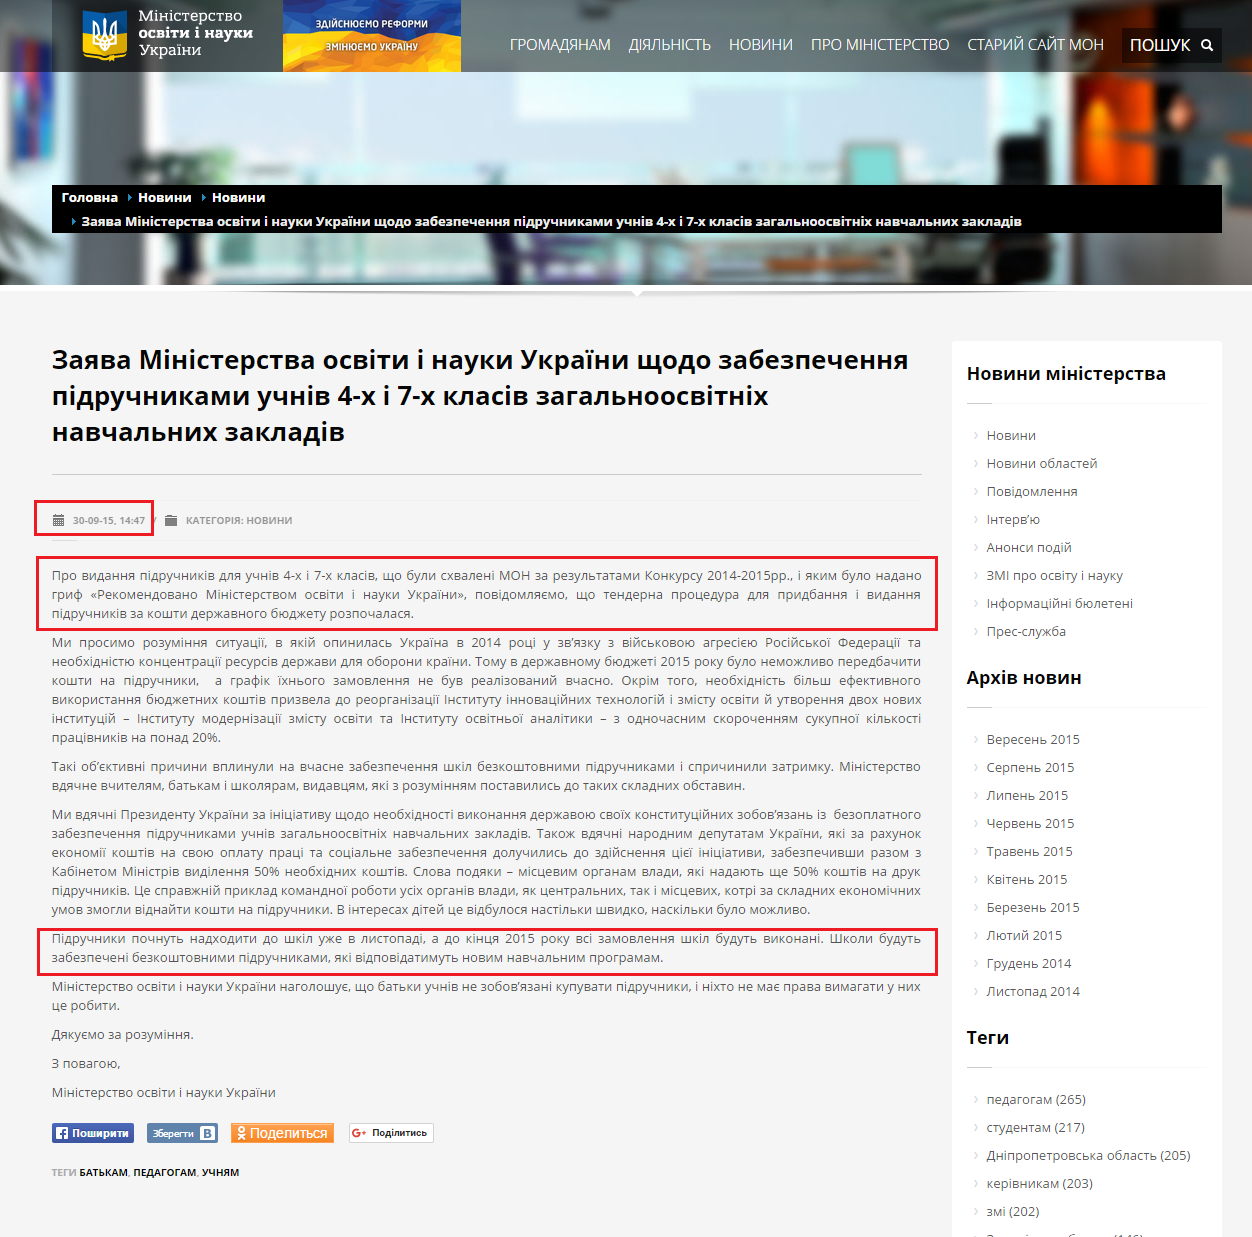 http://mon.gov.ua/usi-novivni/novini/2015/09/30/zayava-ministerstva-osviti-i-nauki-ukrayini-shhodo-zabezpechenny/